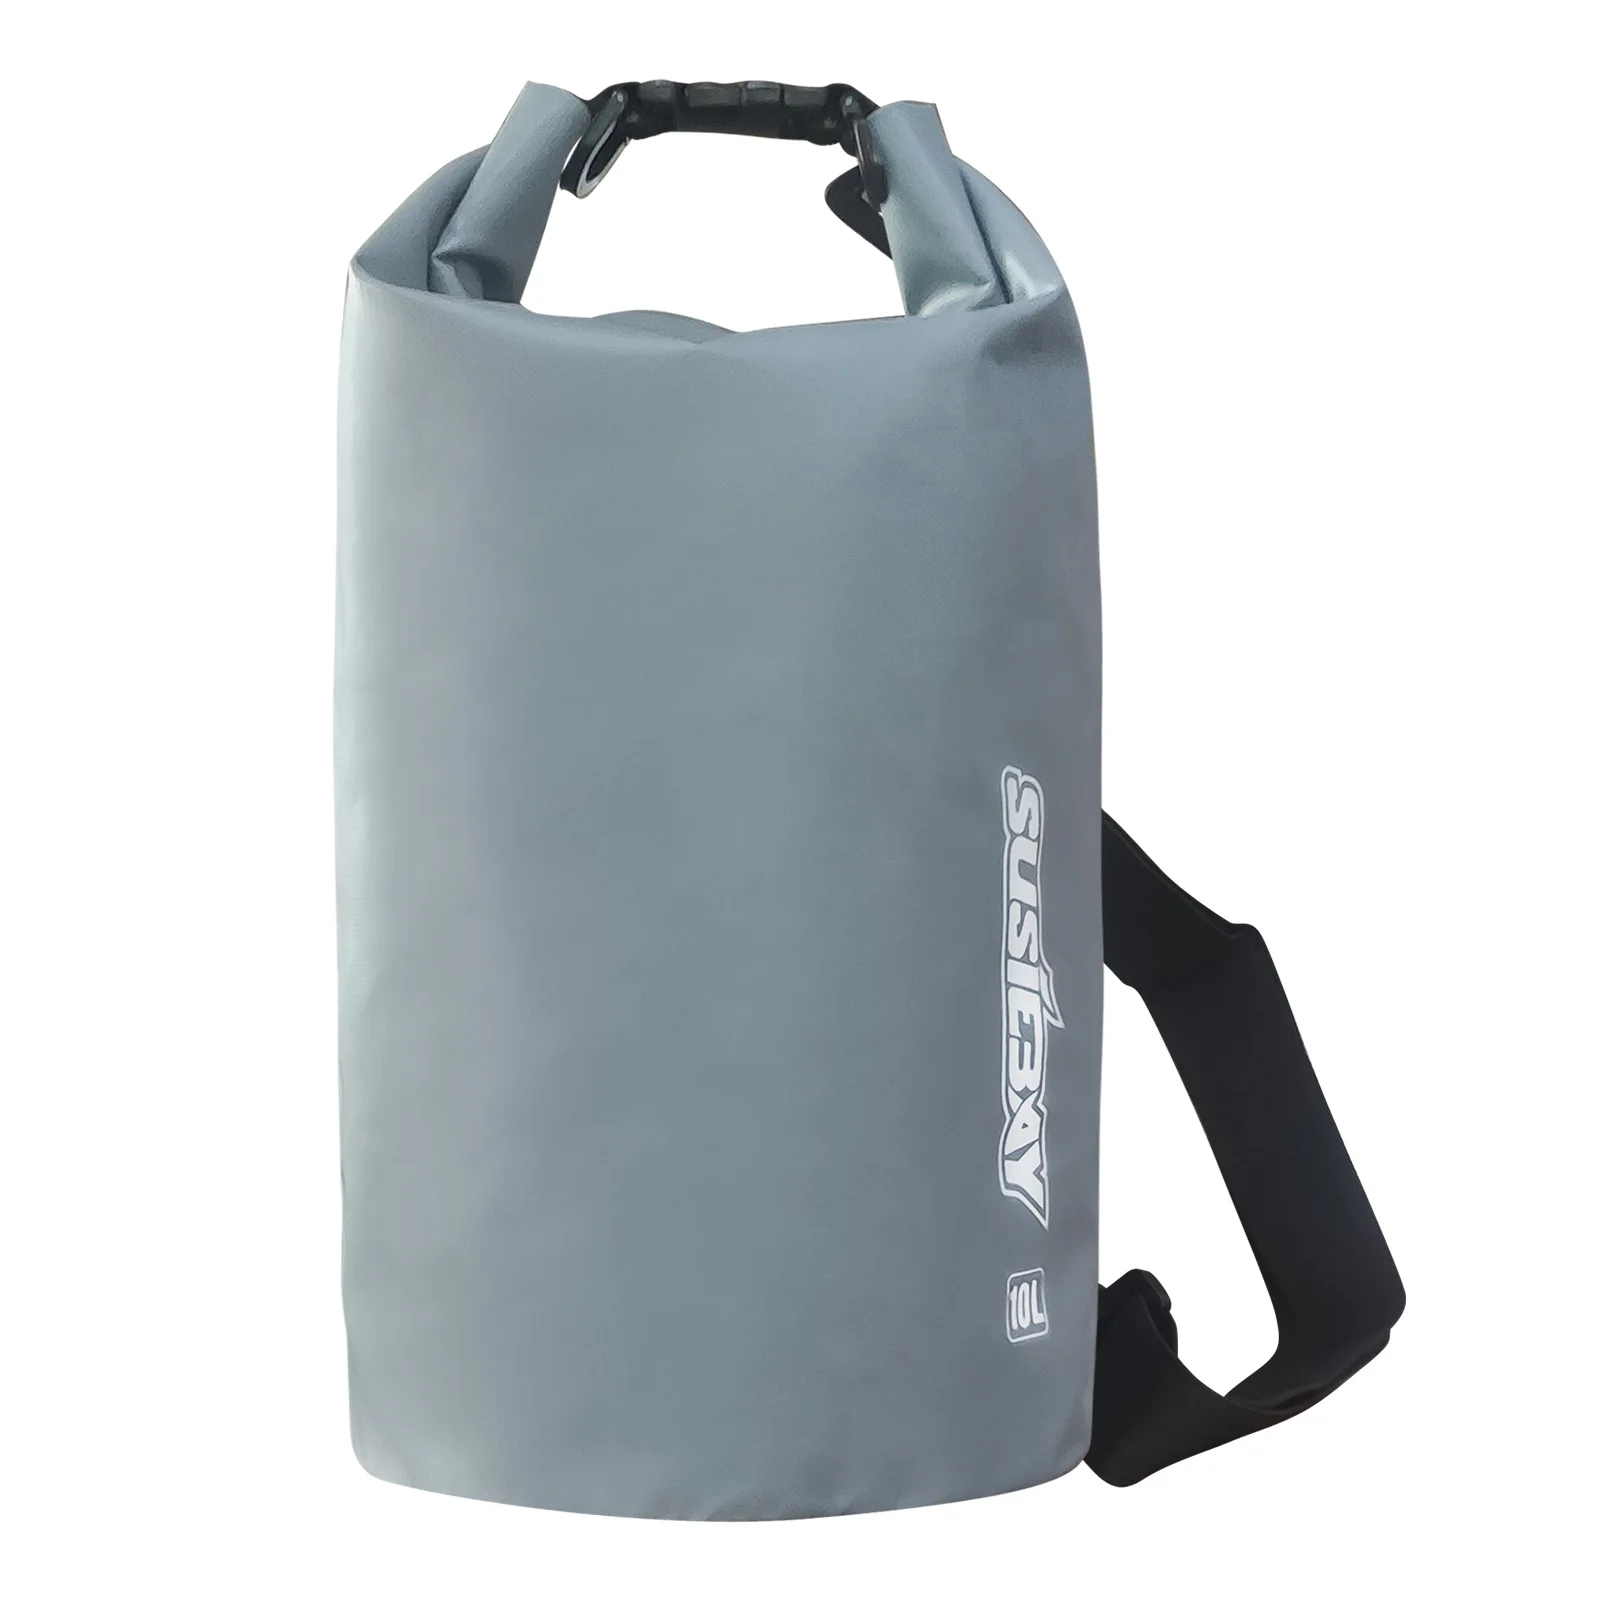 

SUSIEBAY Floating Waterproof Bag Dry Bag 10L, Roll Top Sack Keeps Gear Dry for Kayaking, Rafting, Boating, Swimming, Camping, Hi